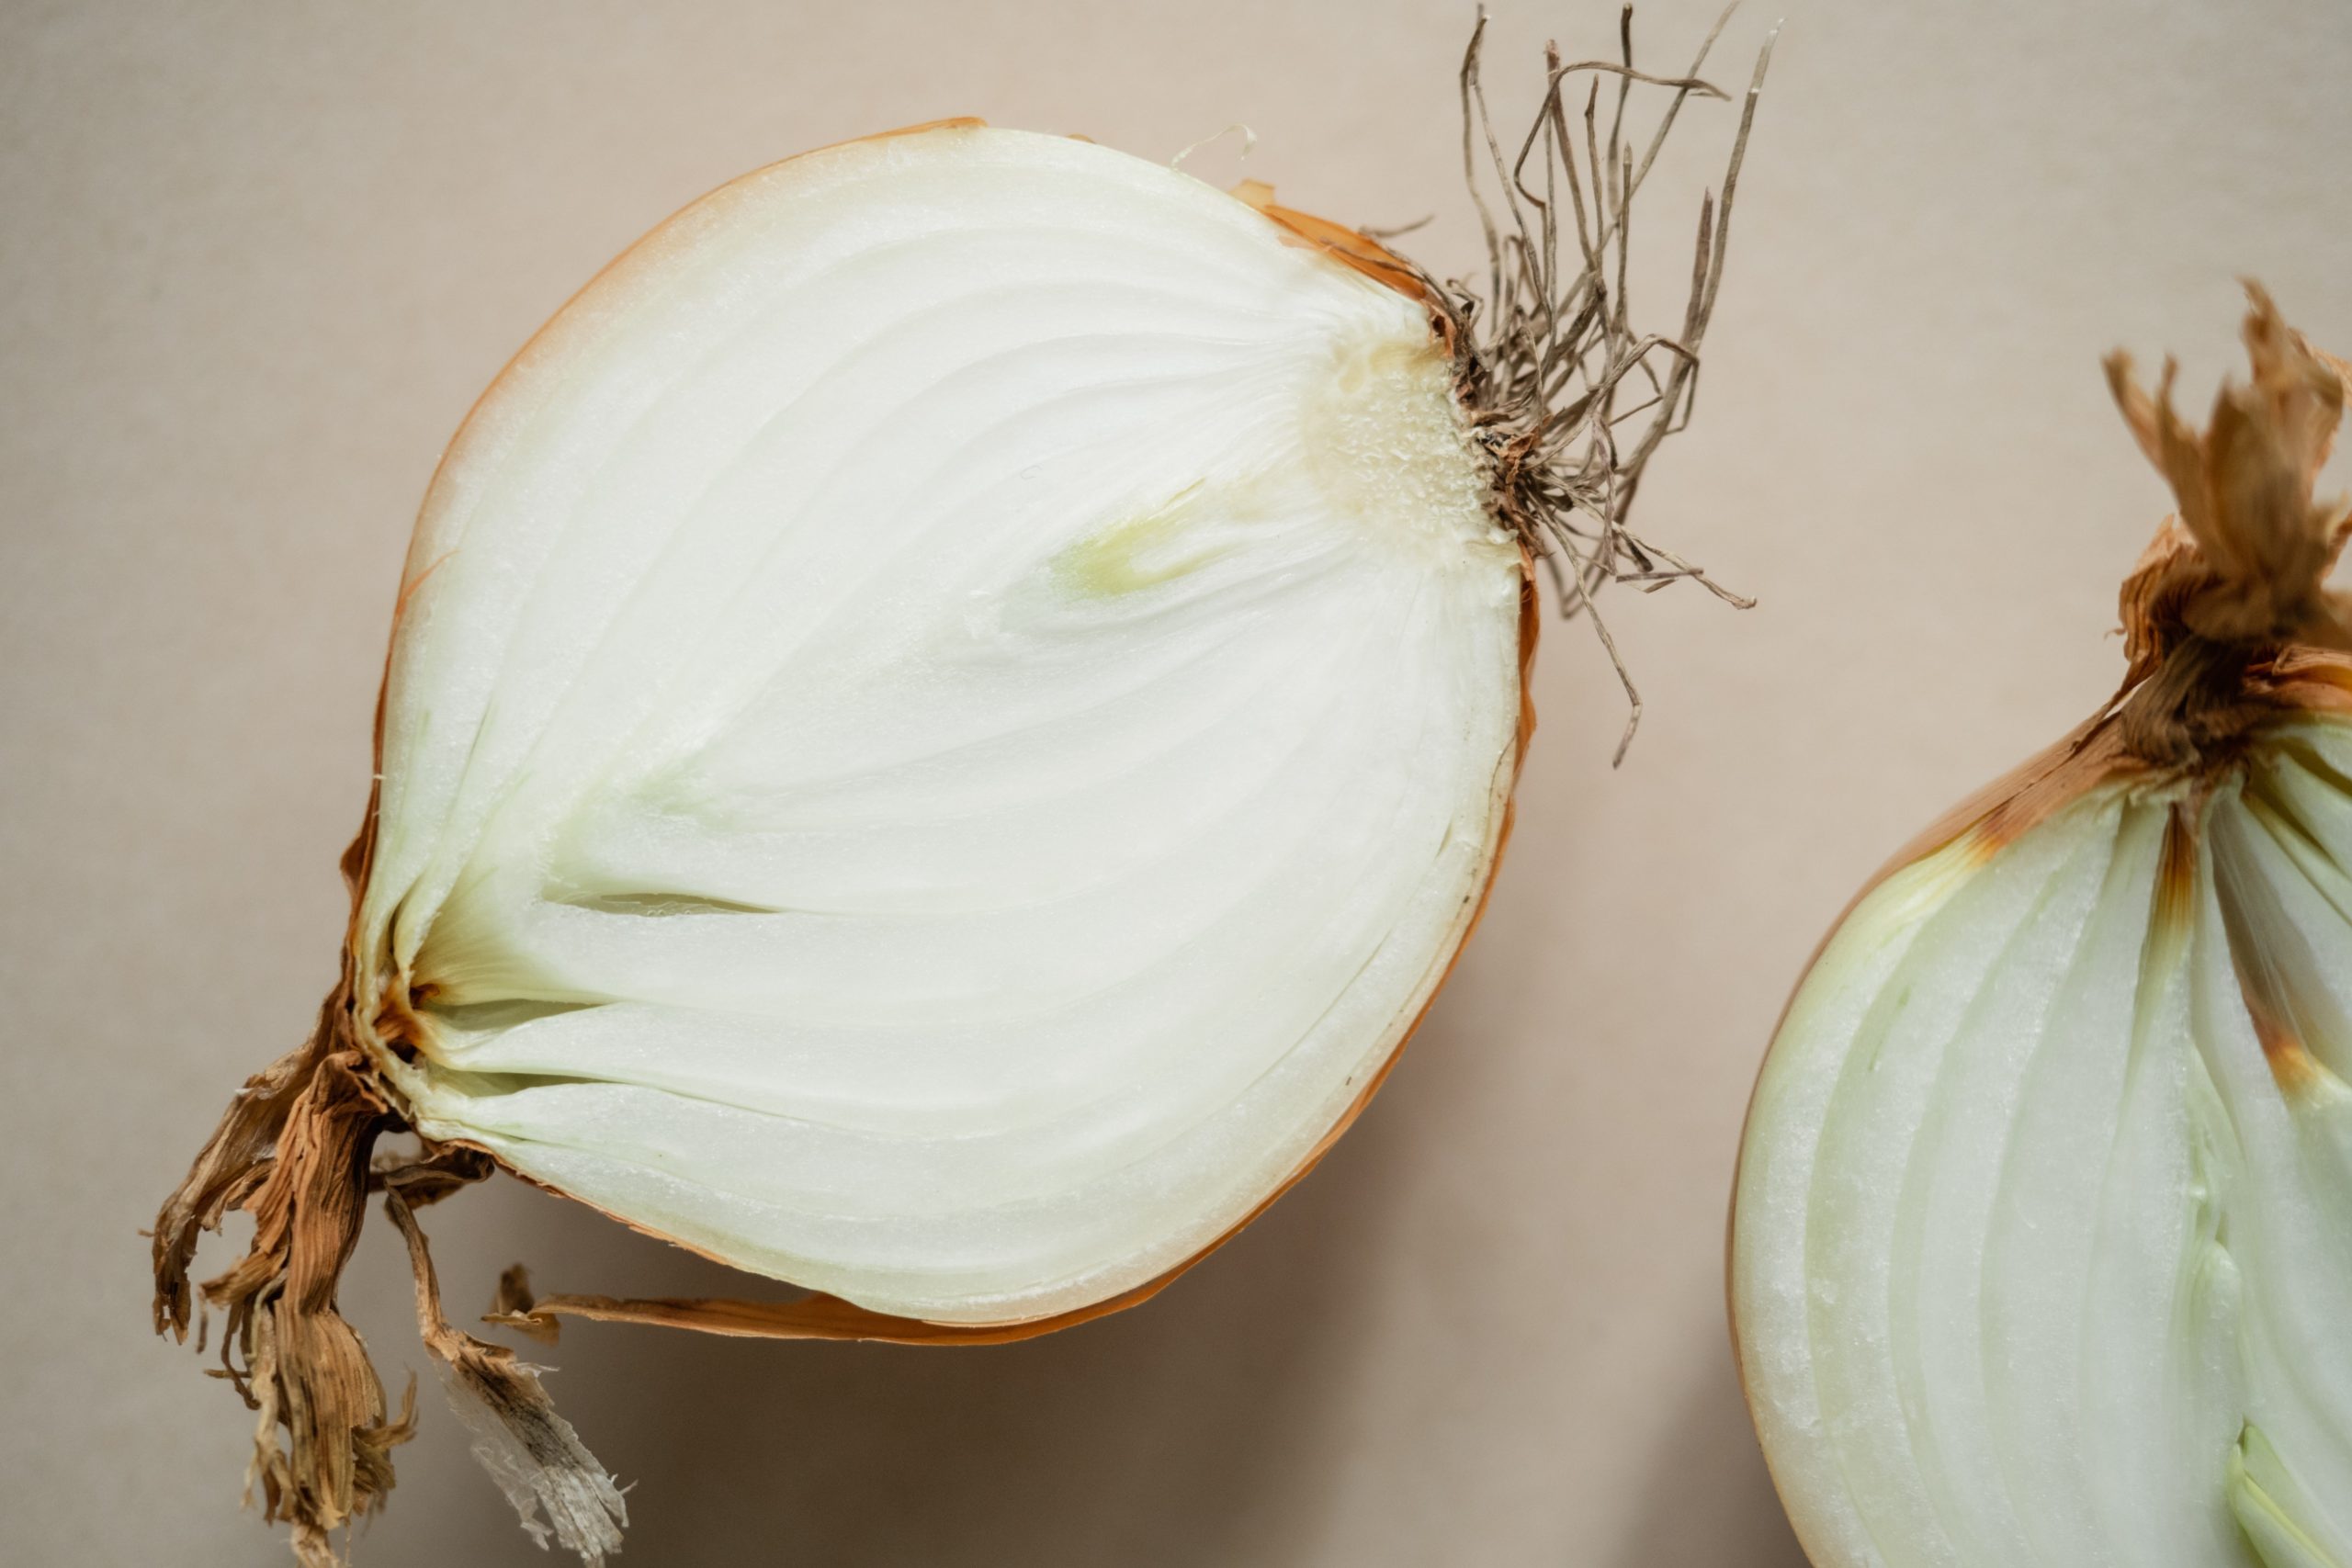 Onion Cut in Half